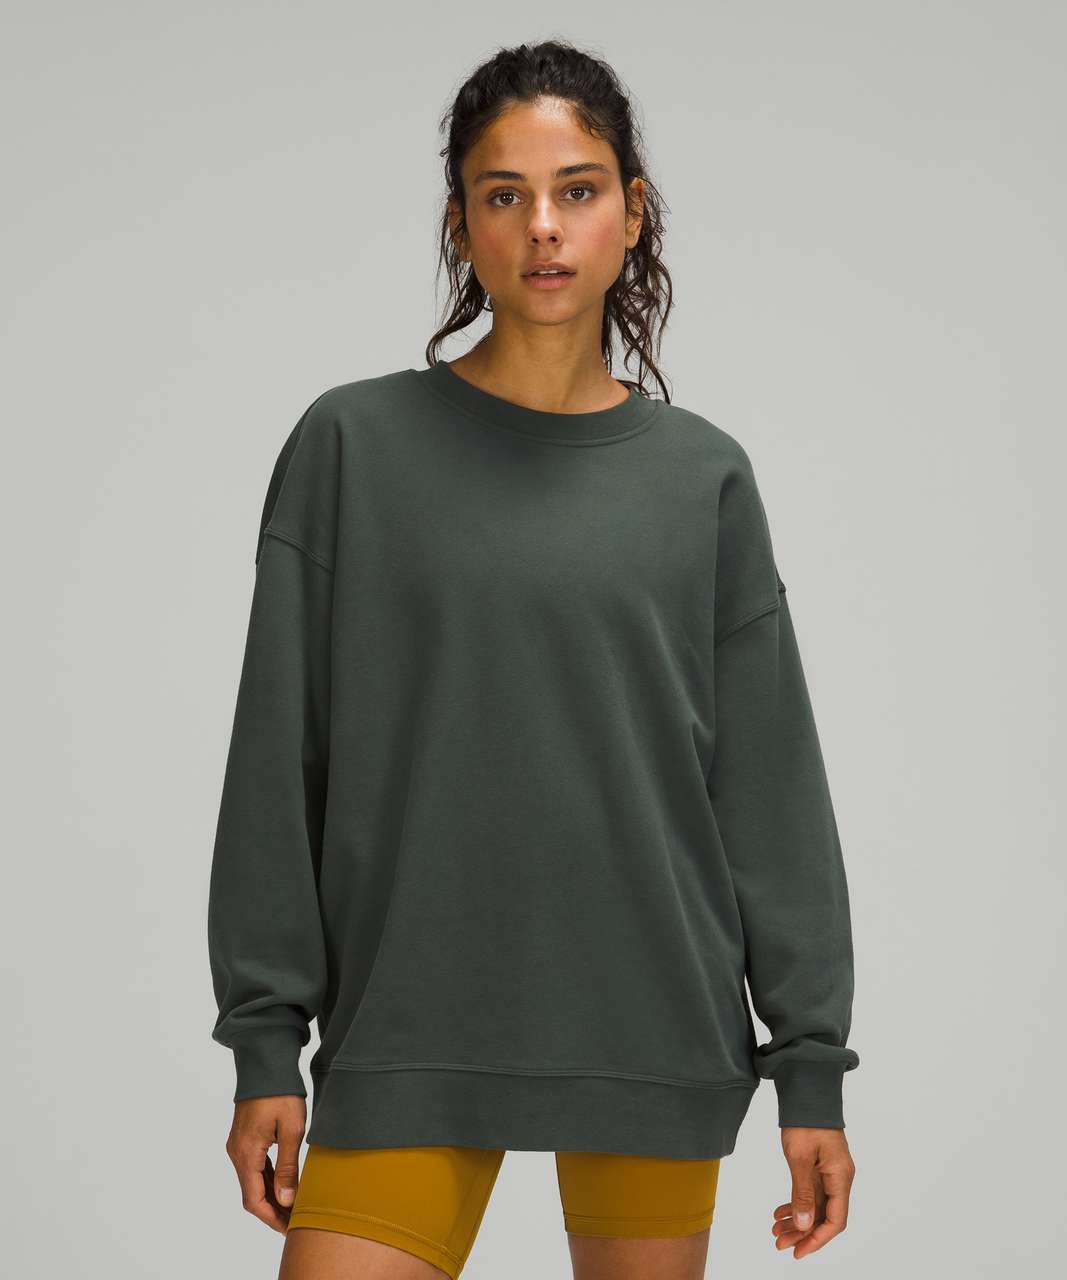 Clemson lululemon Women's Perfectly Oversized Sweatshirt